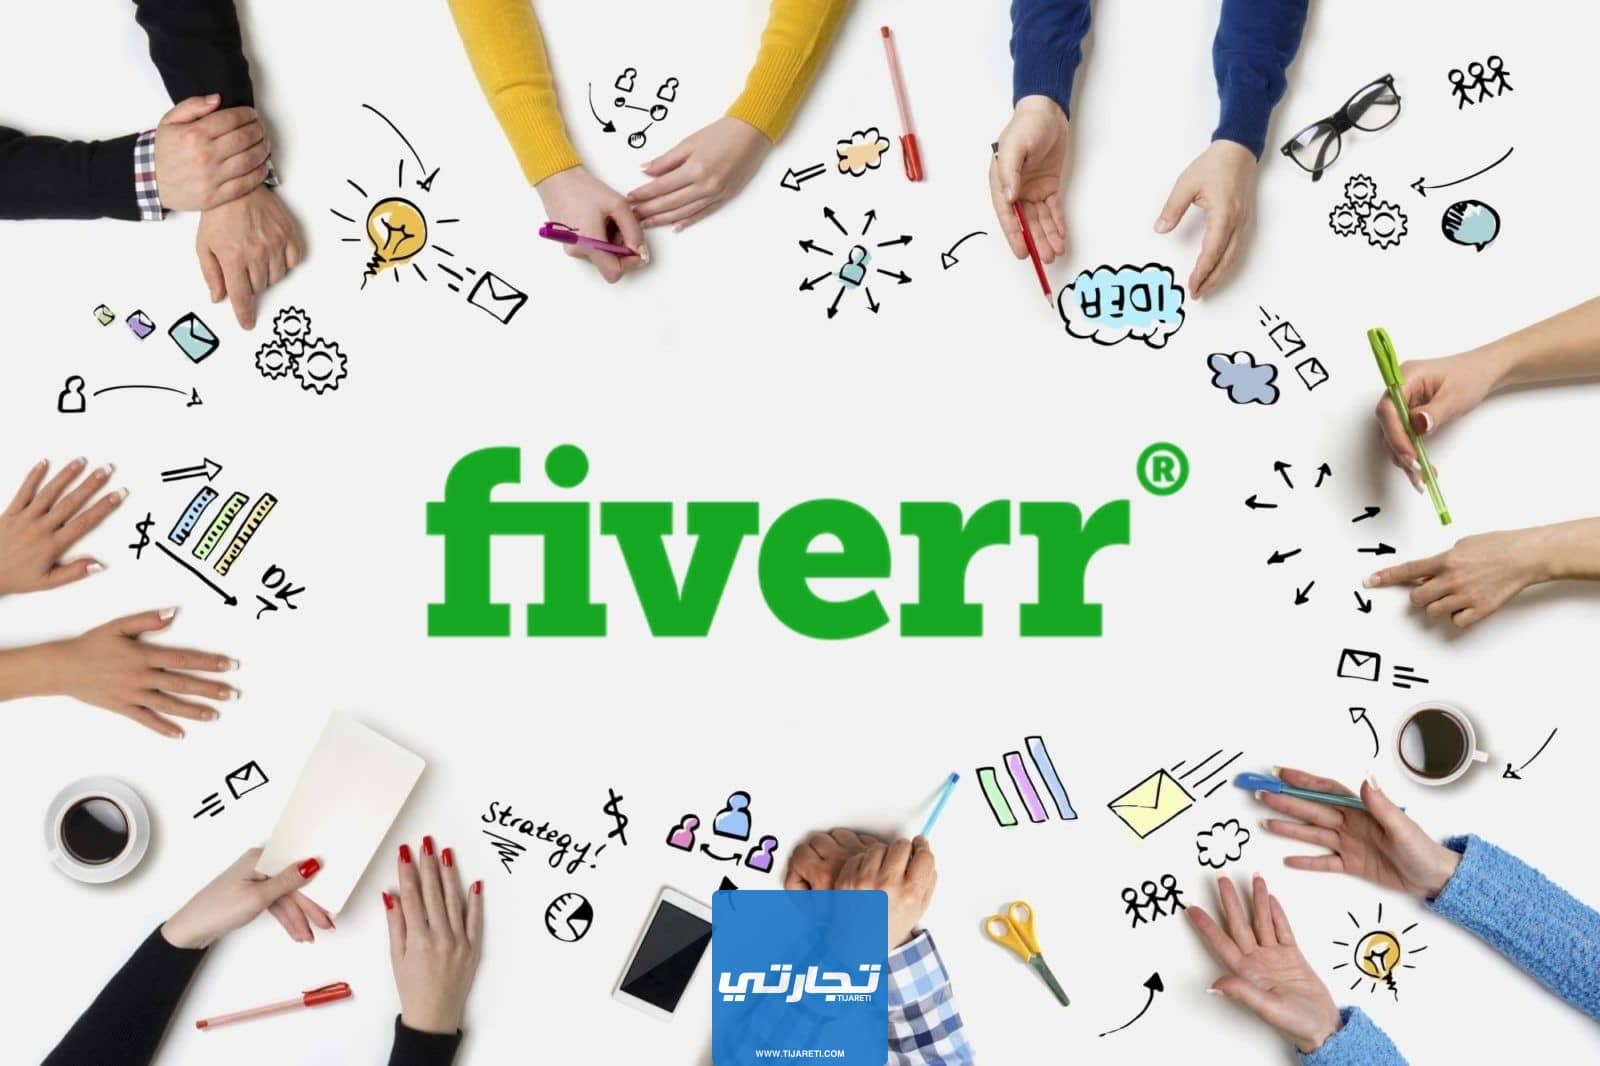 شرح موقع fiverr: طريقة التسجيل والربح منه بالخطوات